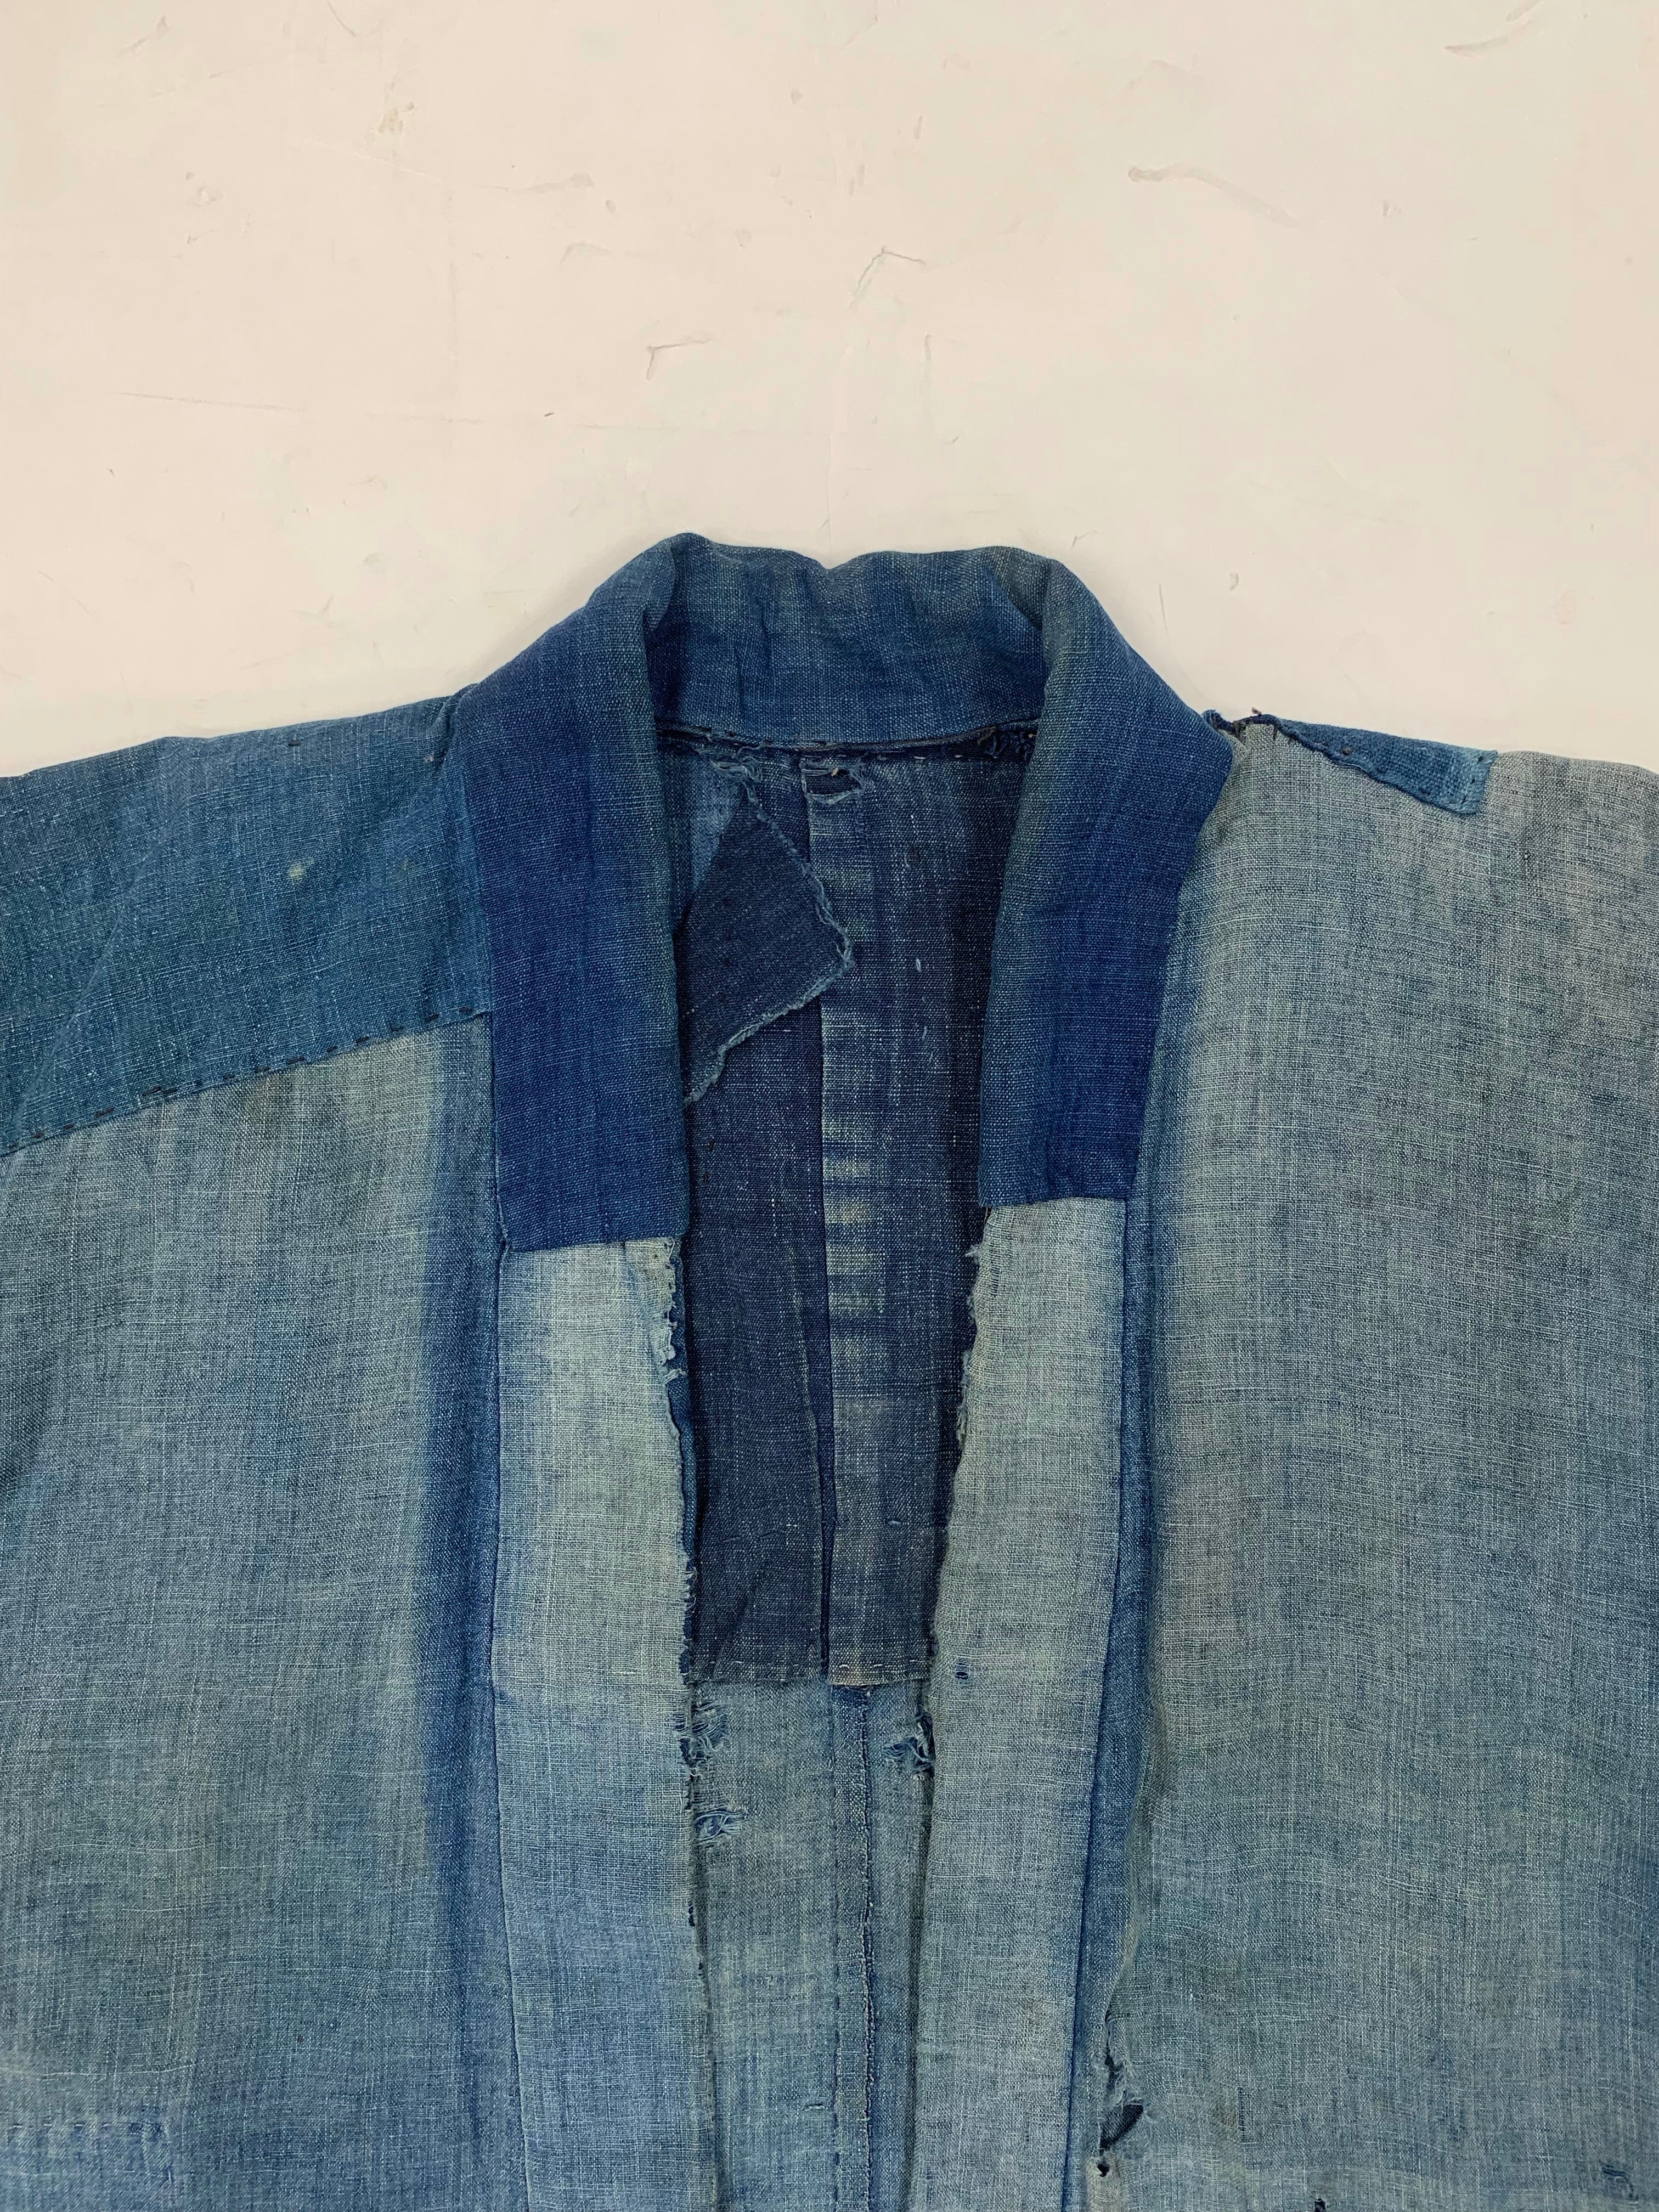 19th/Early20th Century Japanese Boro Noragi Kimono - Shades of Indigo - S/M